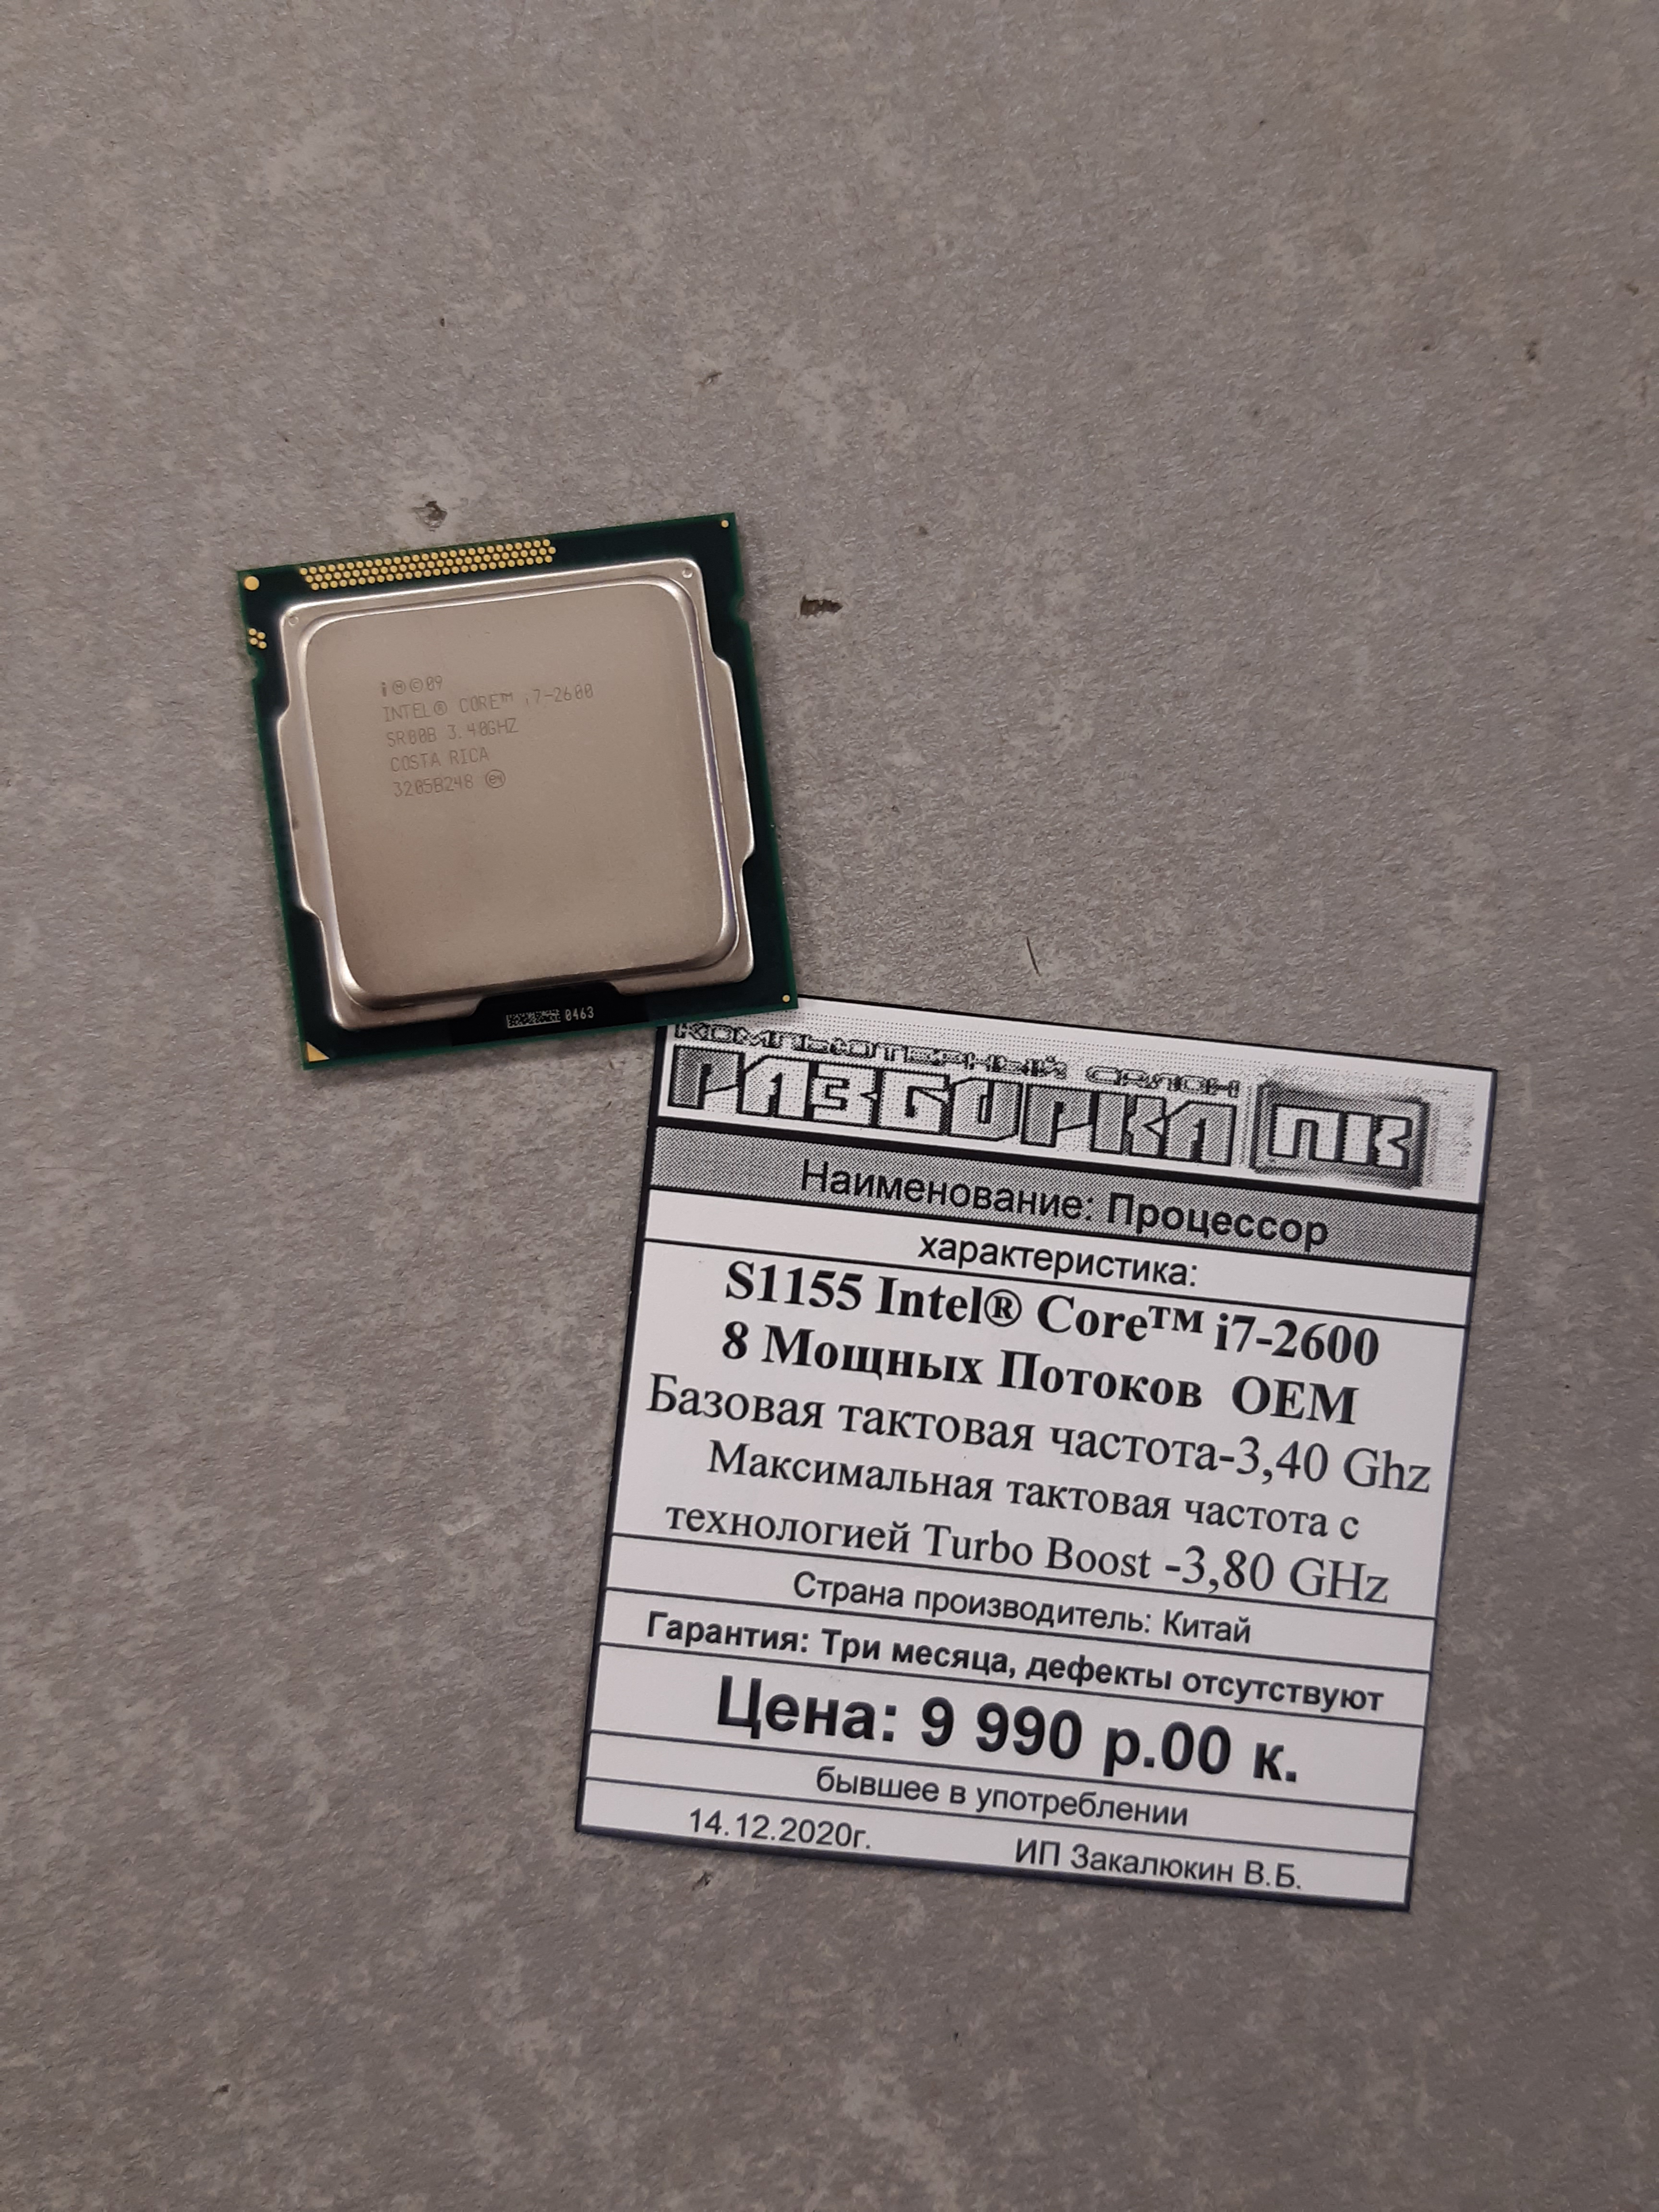 Процессор s1155 Intel Core™ i7-2600